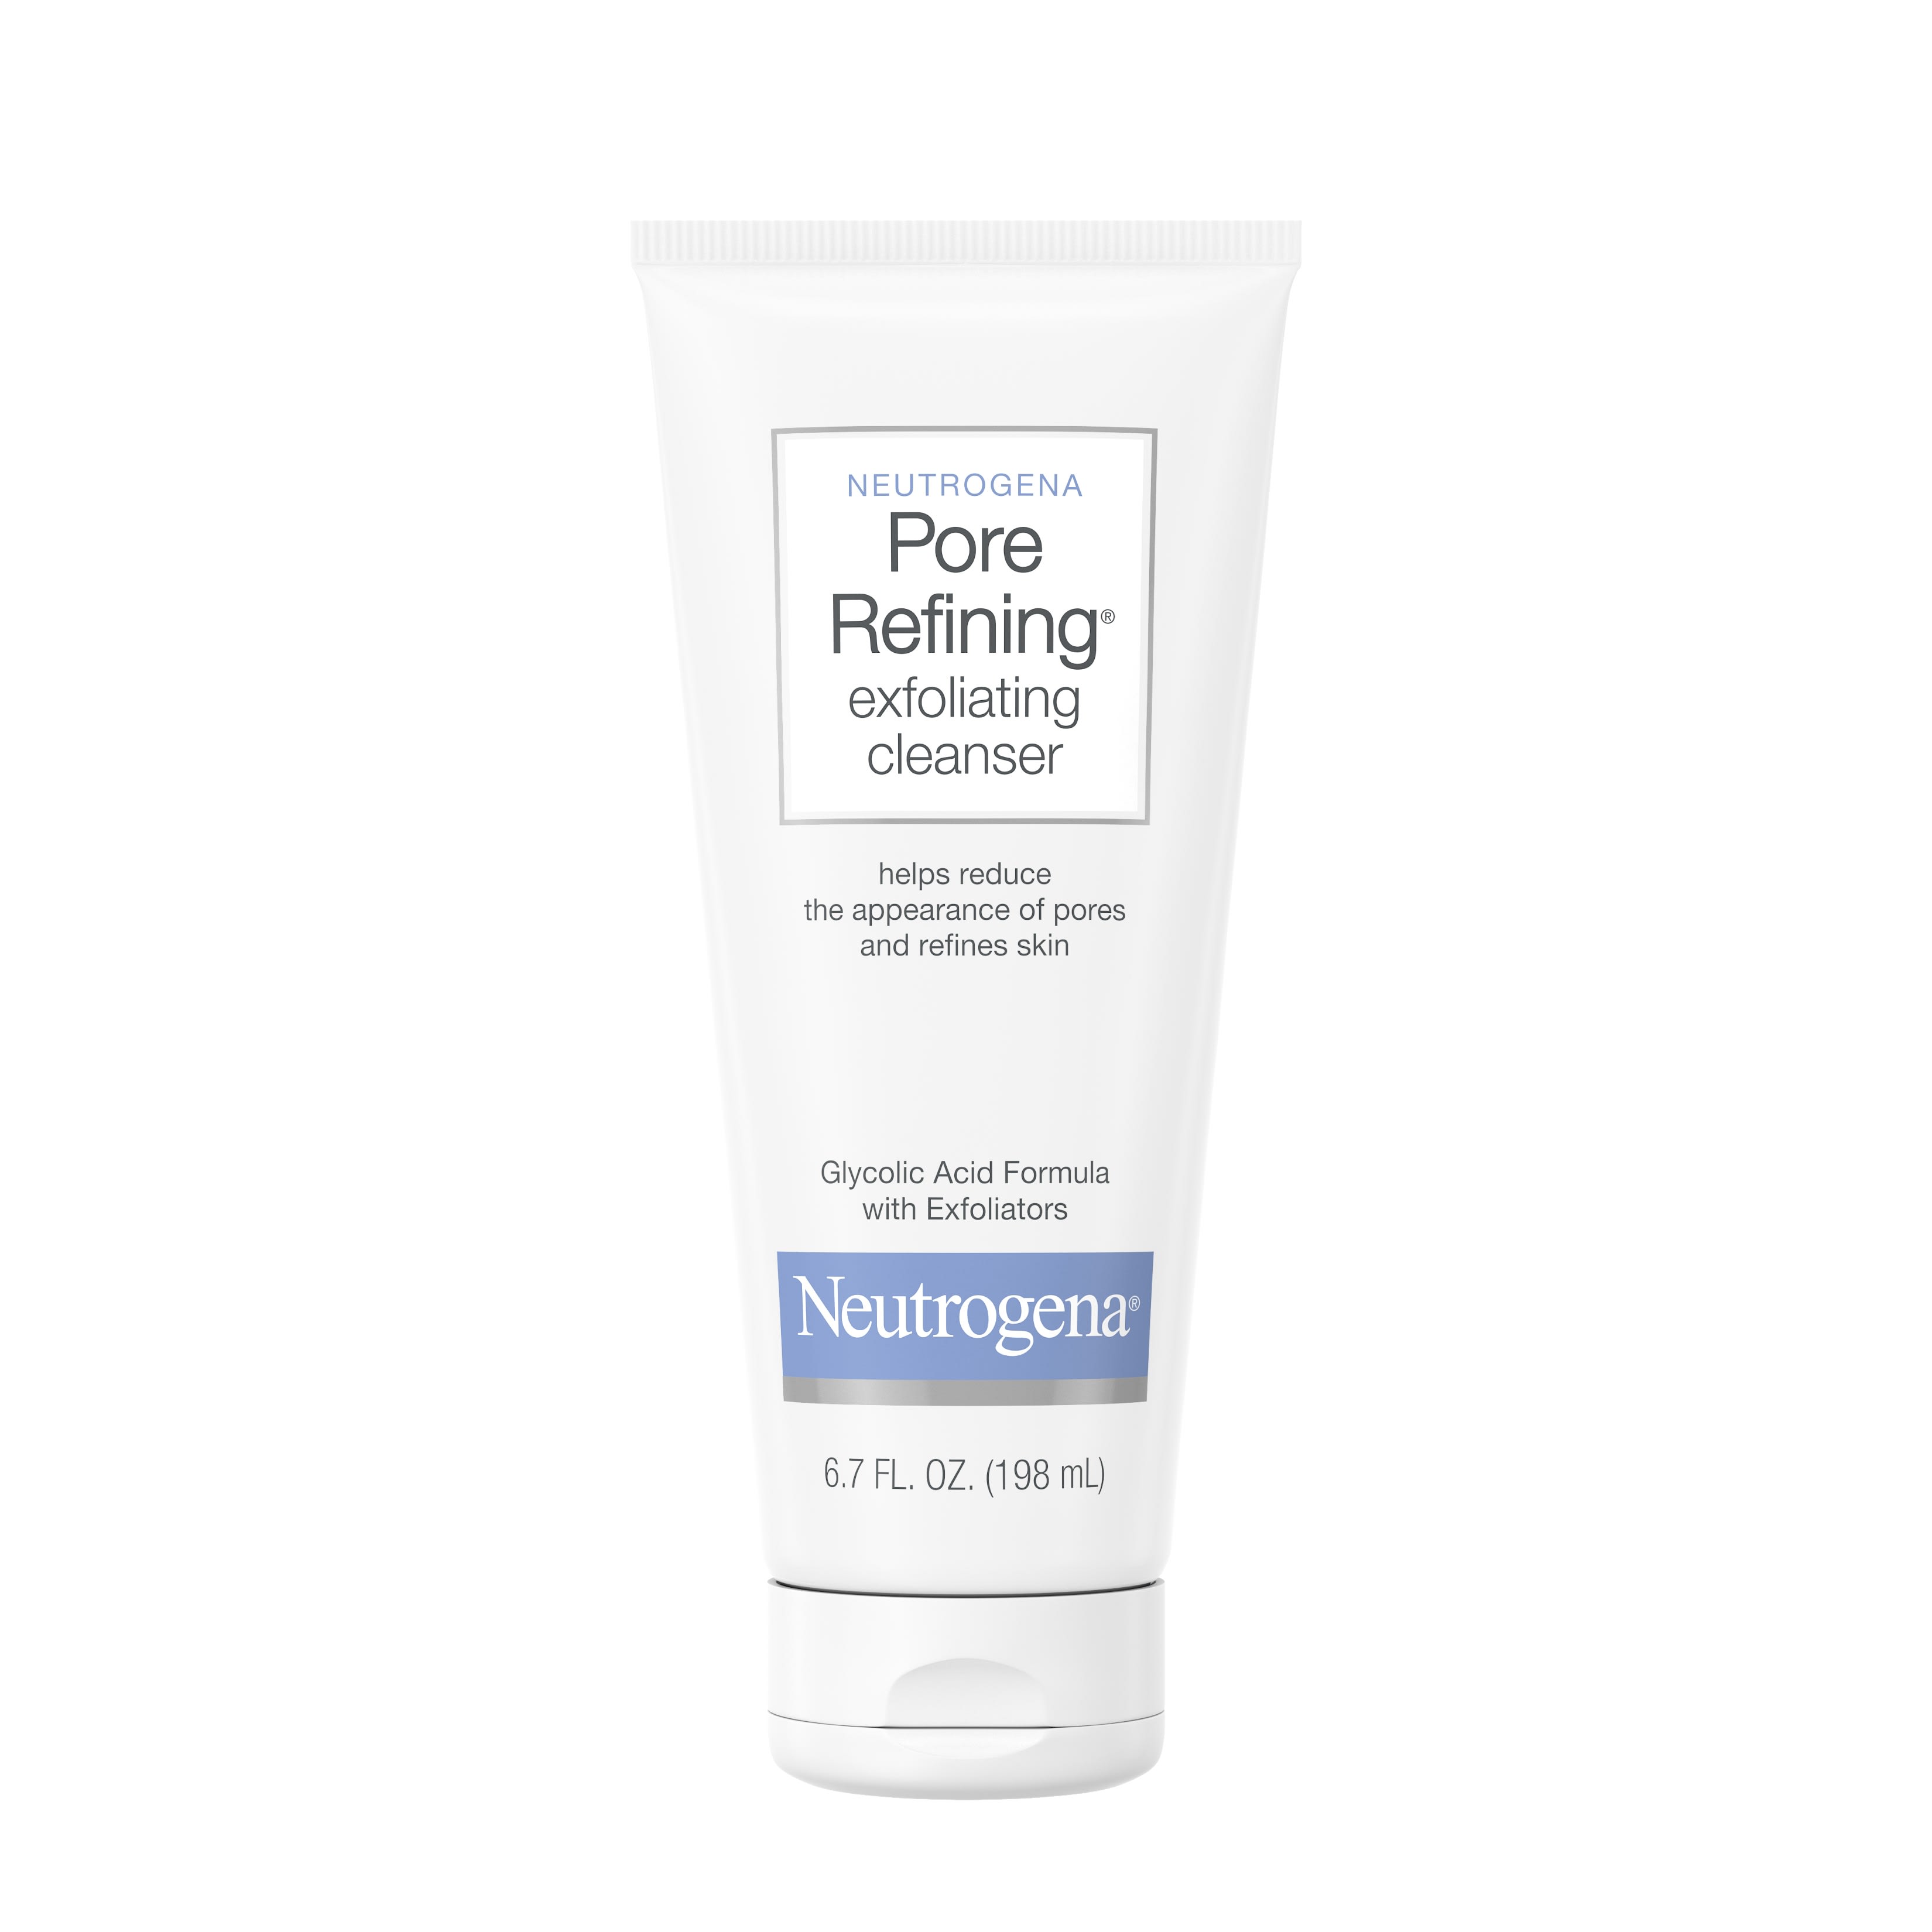 Neutrogena Pore Refining Exfoliating Daily Facial Cleanser, 6.7 fl. oz - image 1 of 9